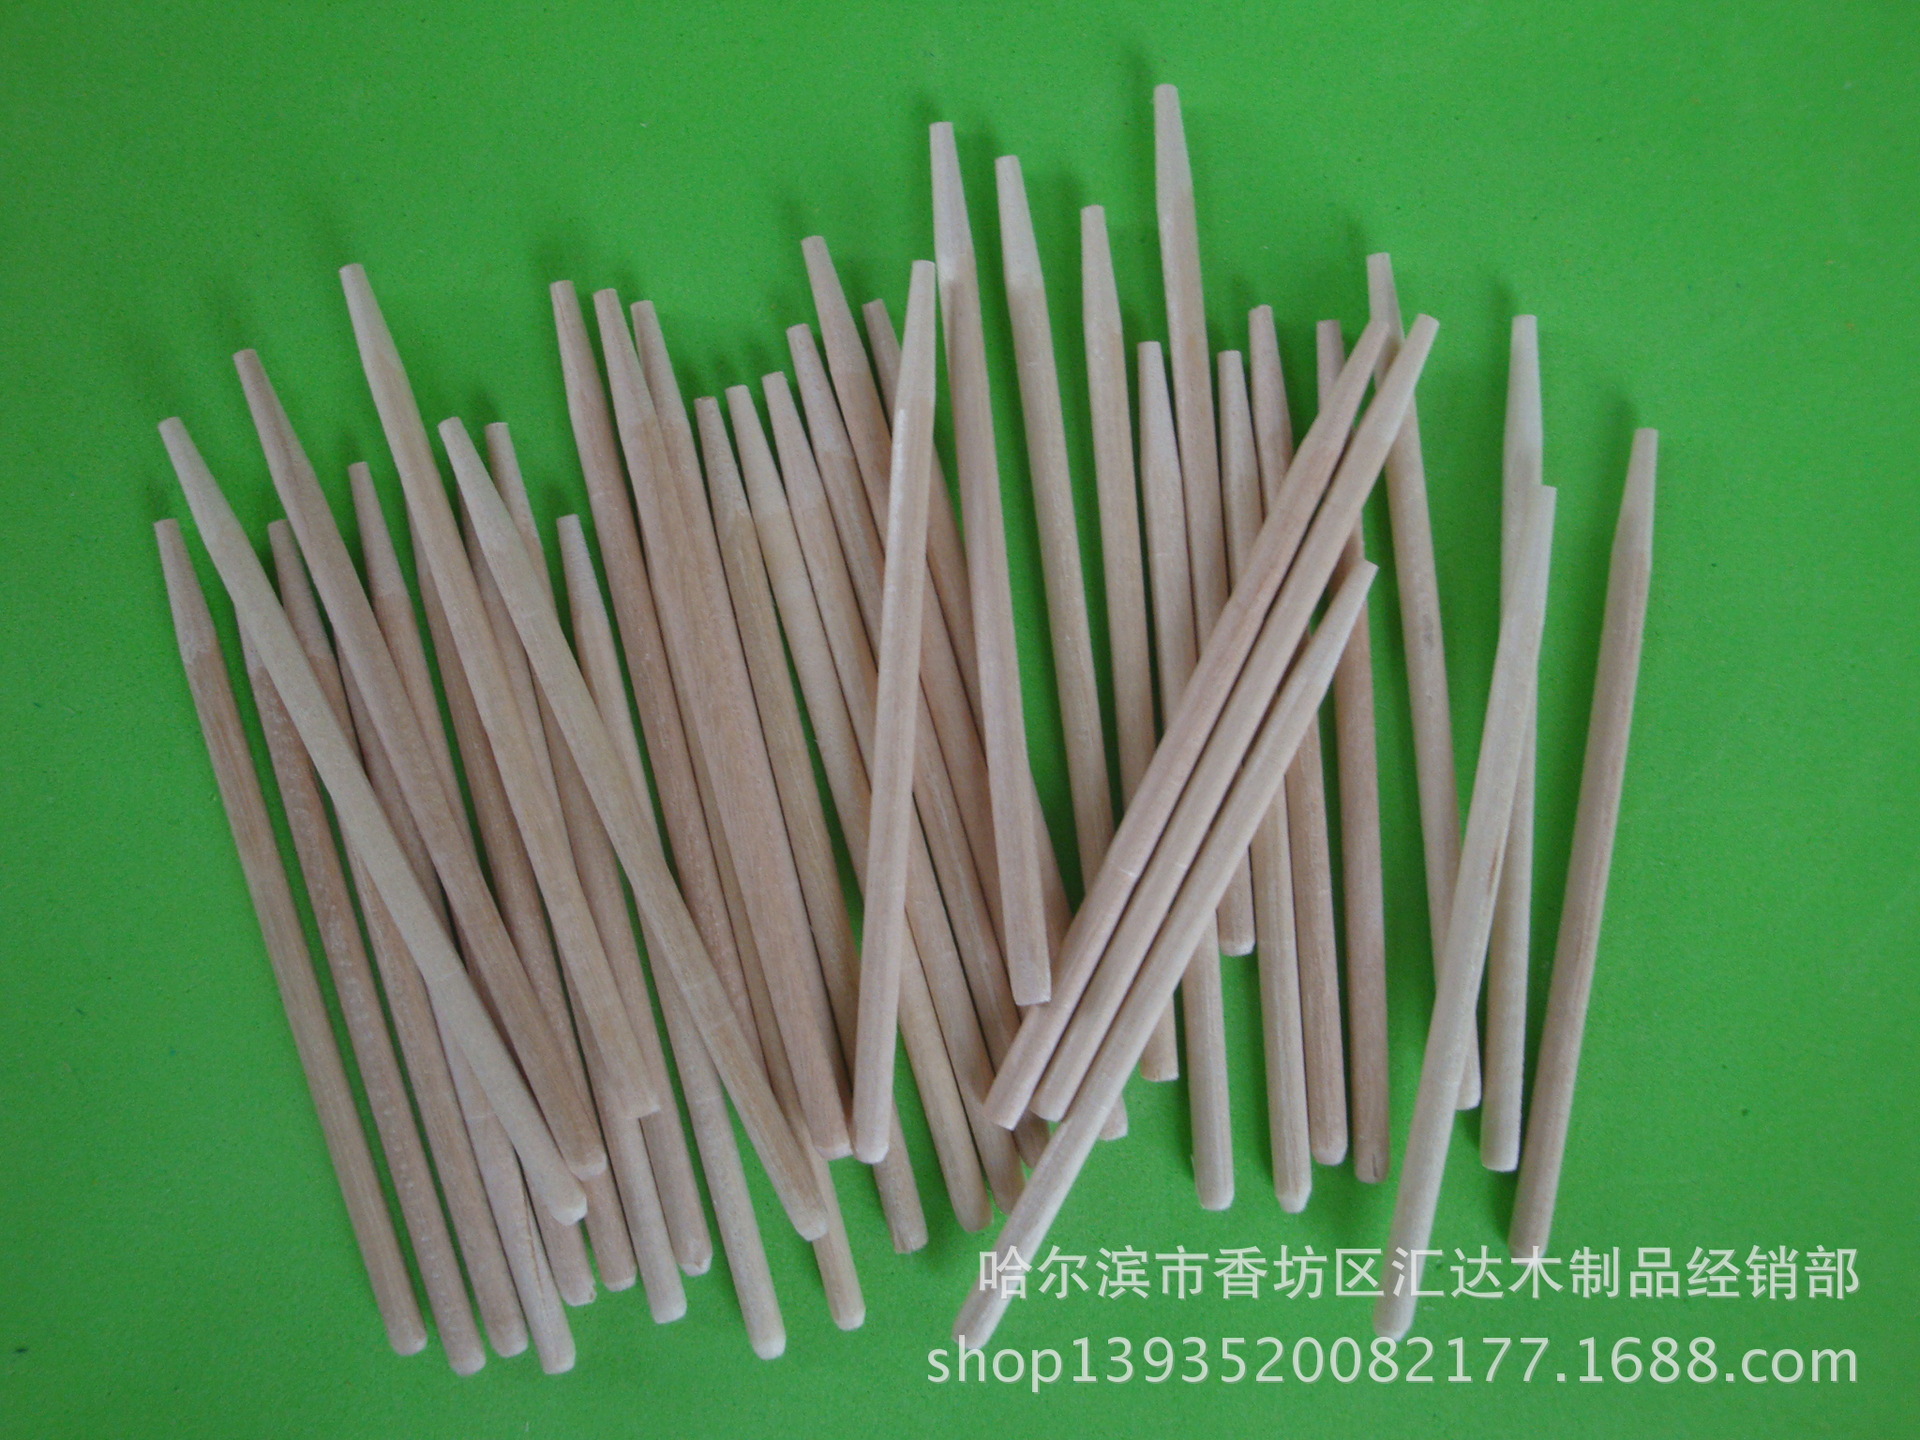 厂家供应棒糖棒 木质棒糖棒 环保磨尖棒糖棒 一次性棒糖棒示例图4